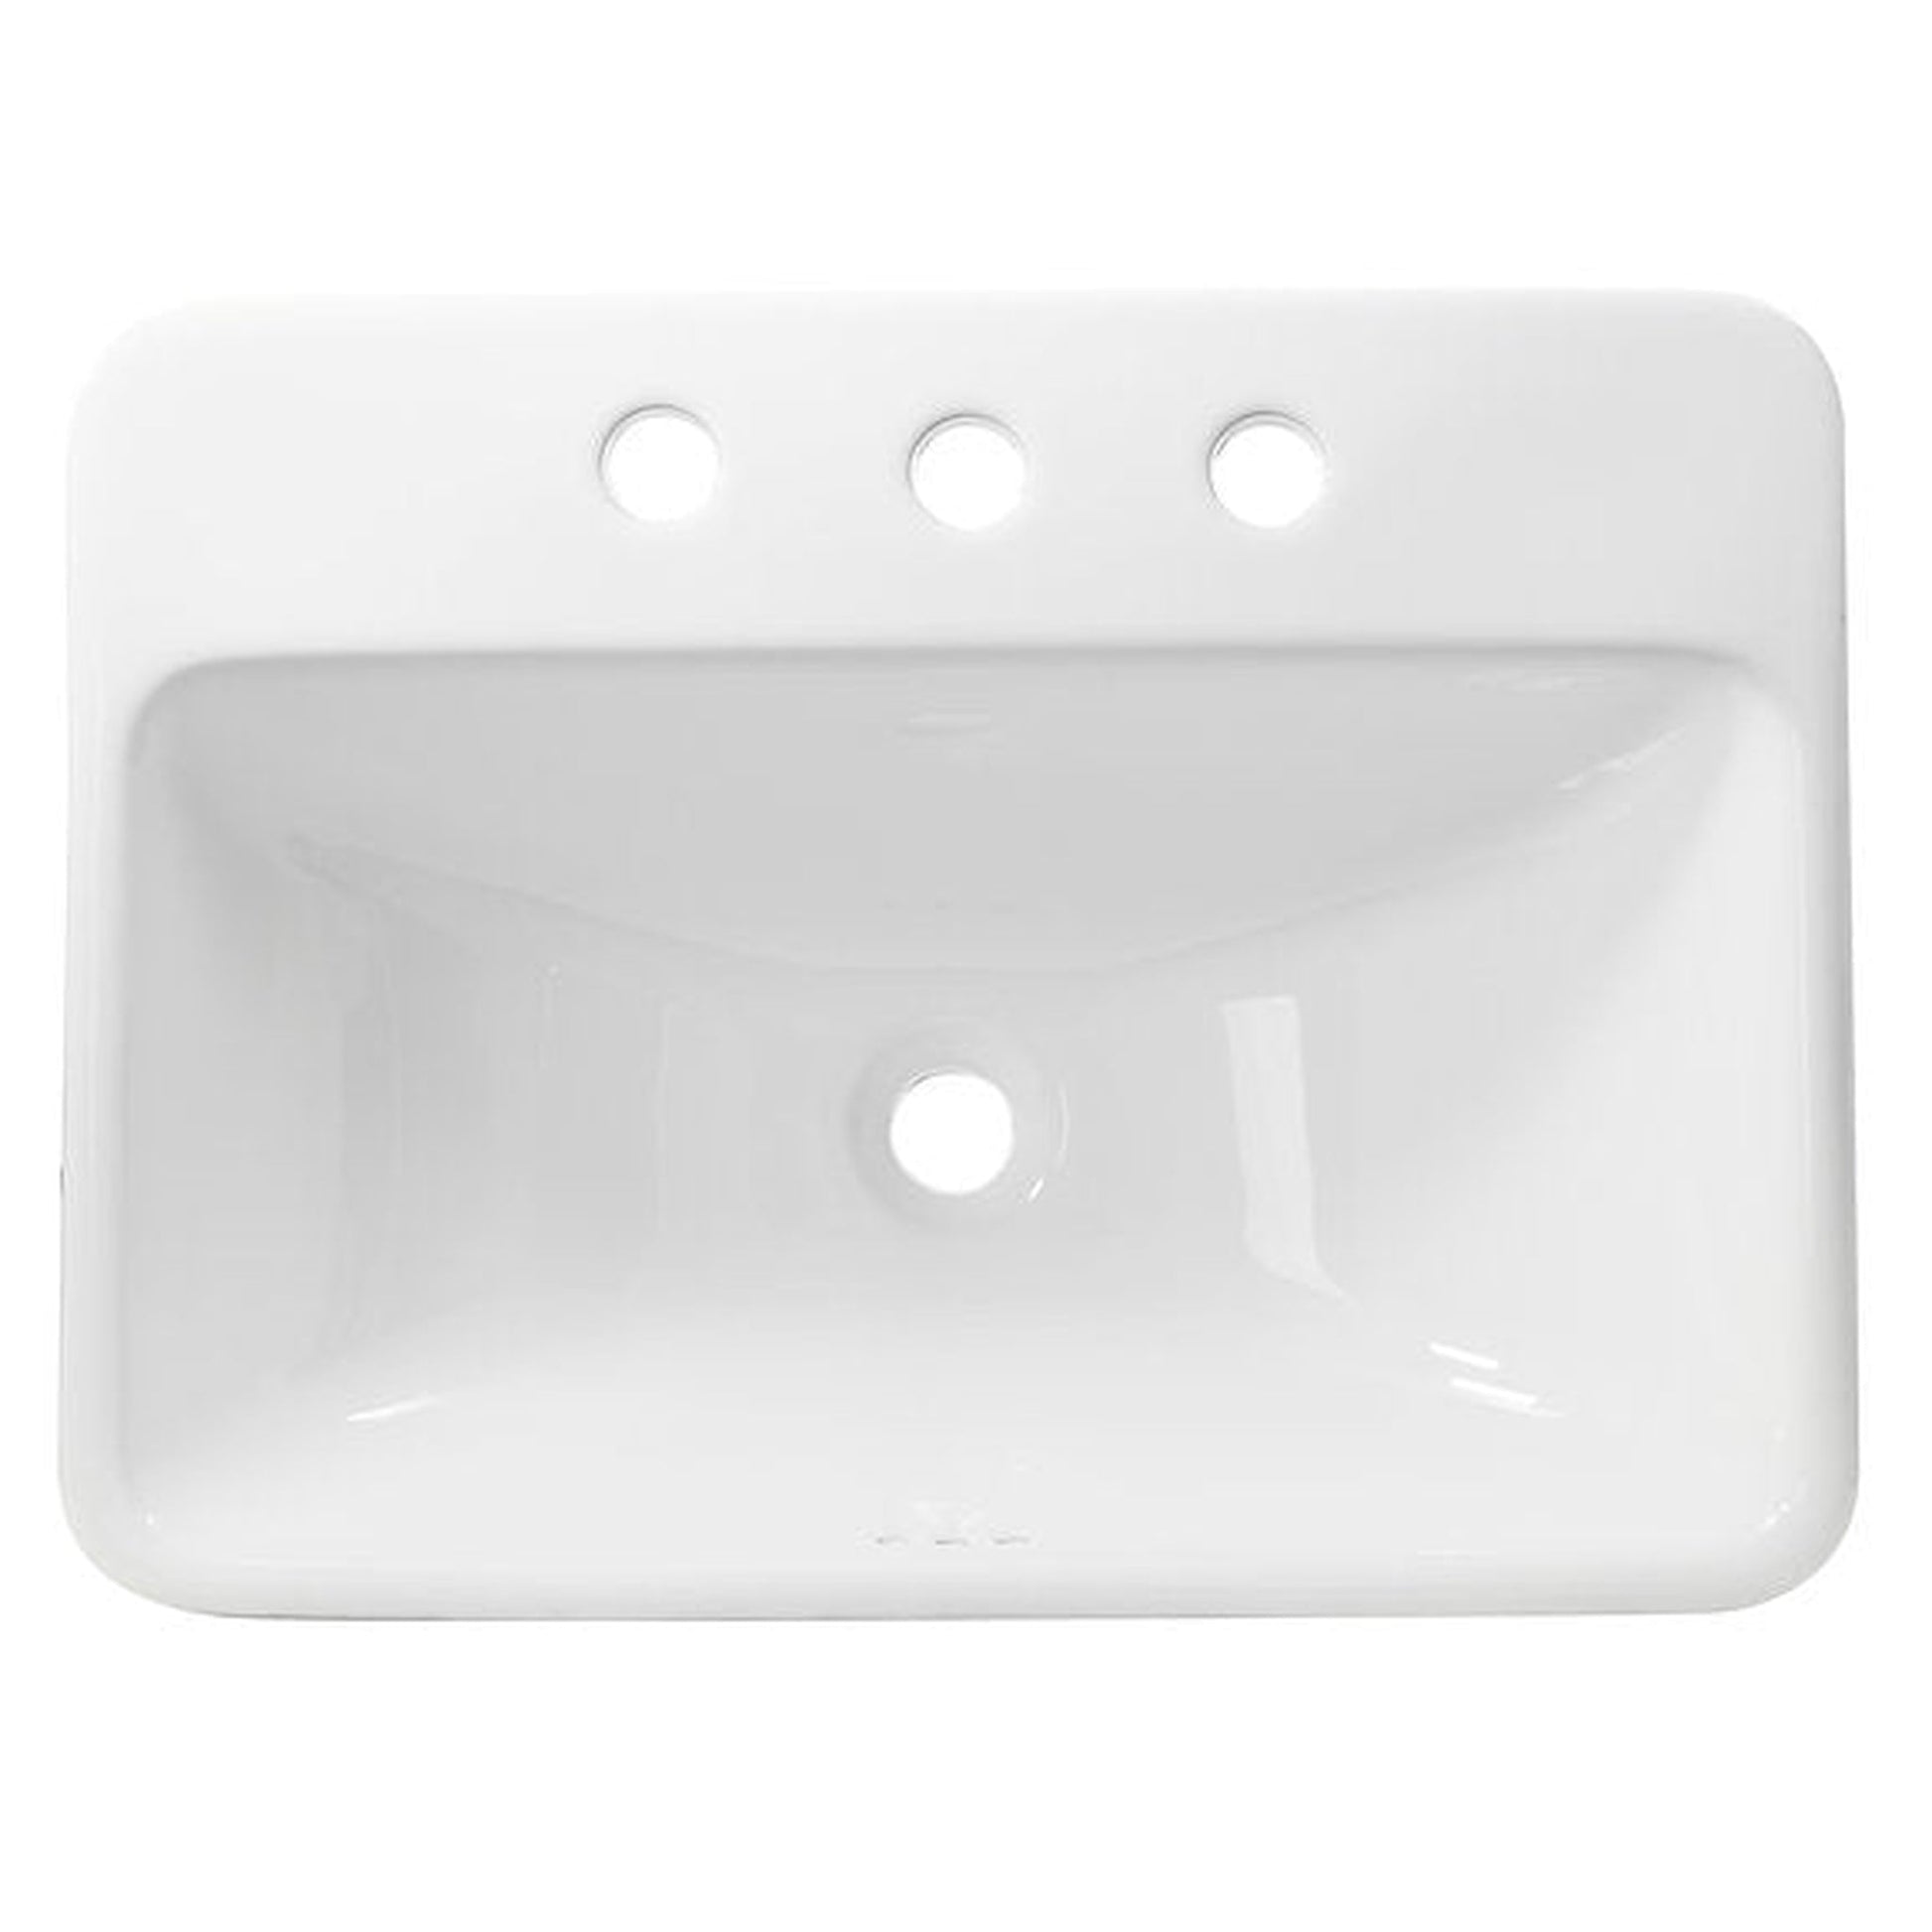 Nantucket Sinks Brant Point 23" 3-Hole Rectangular Drop-In Porcelain Enamel Glazed White Ceramic Vanity Sink